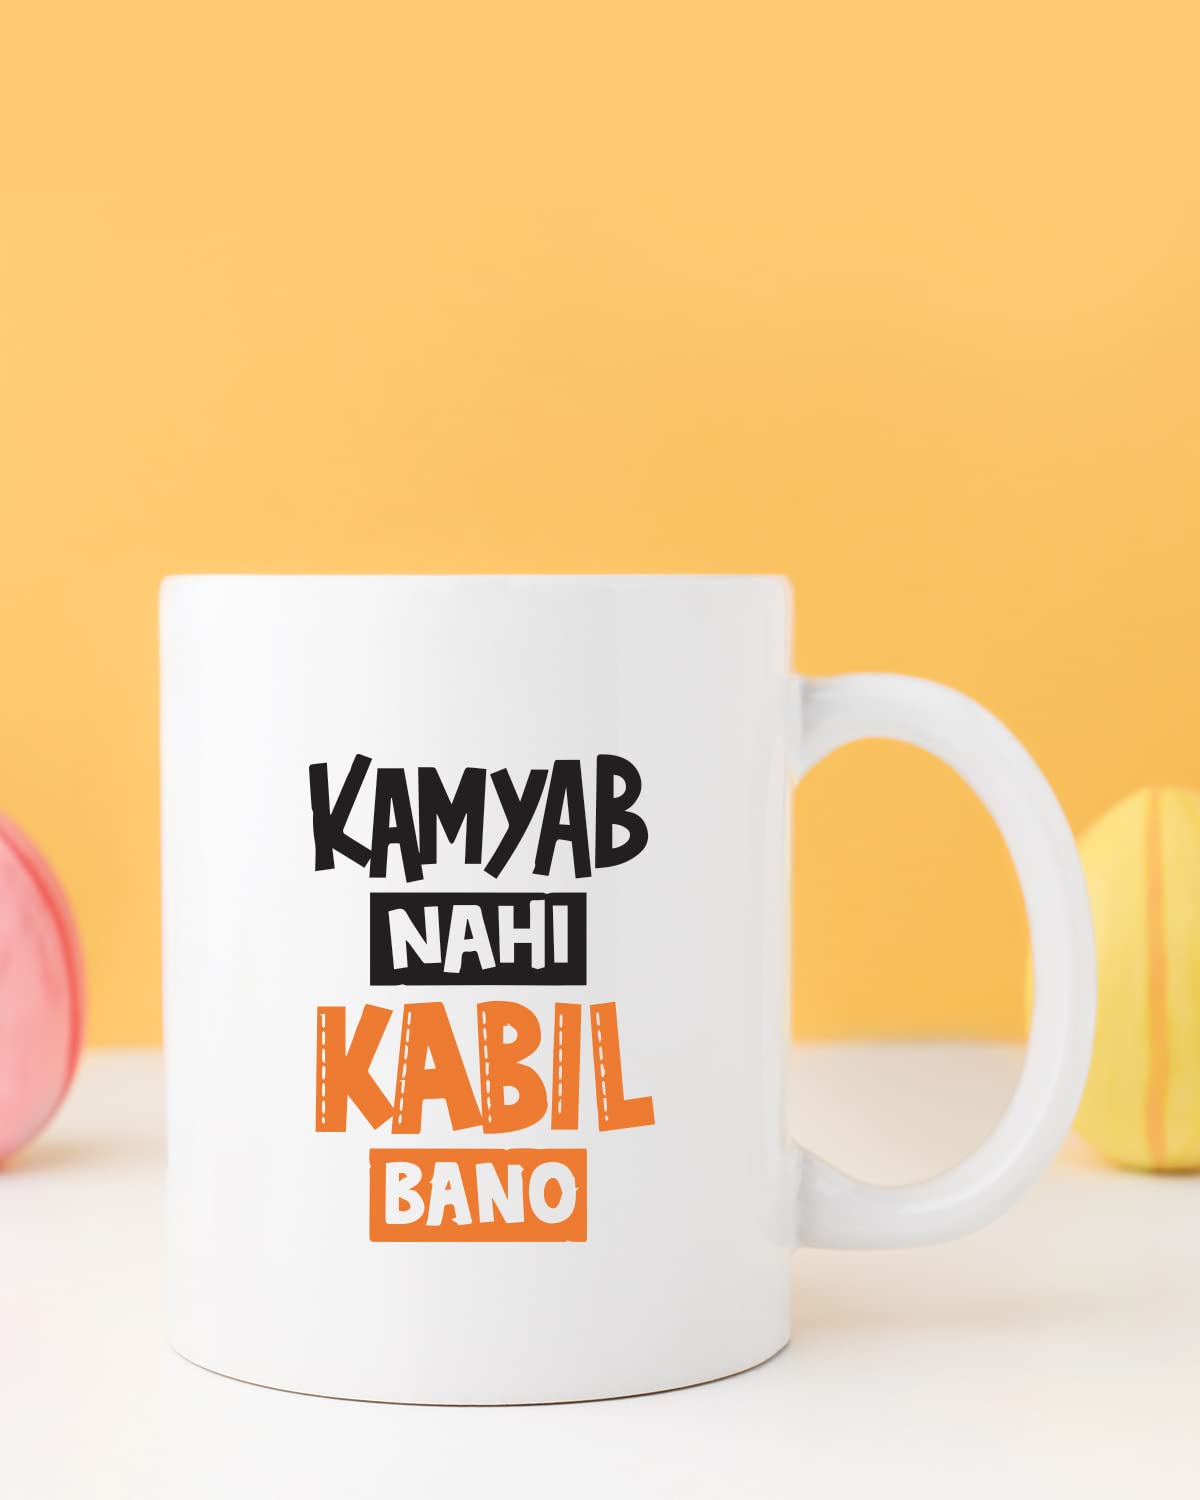 Kamyab Nahi Kabil Bano Coffee Mug - Gift for Friend, Birthday Gift, Birthday Mug, Motivational Mug, Printed with Funny & Funky Dialogues, Bollywood & Web Series Mugs, Funny Mugs for Him & Her